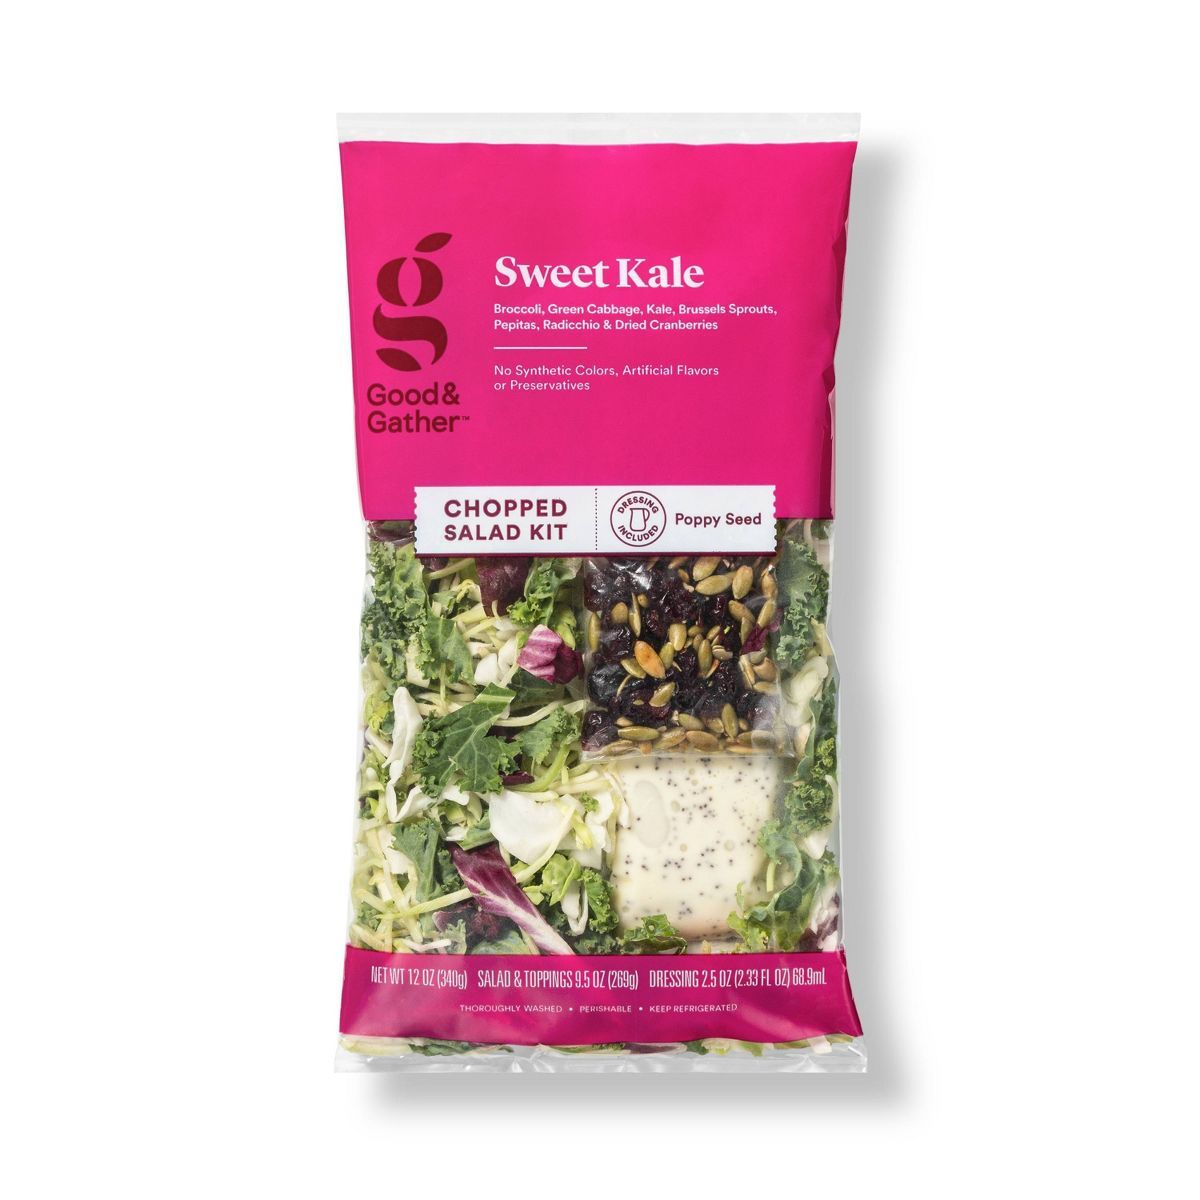 Sweet Kale Chopped Salad Kit - 12oz - Good & Gather™ | Target